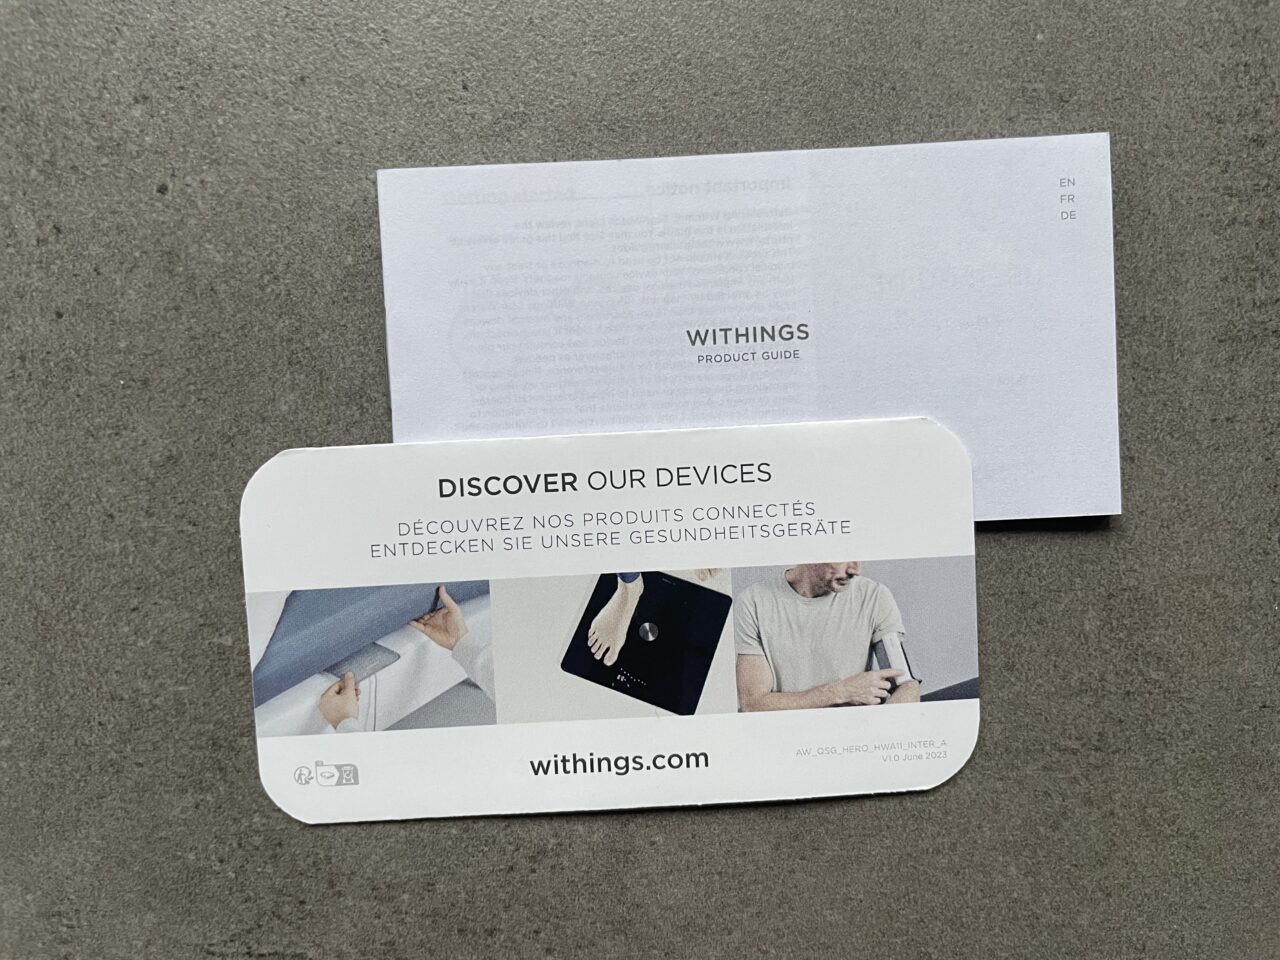 Broszura produktowa Withings leżąca na szarej powierzchni z napisem "DISCOVER OUR DEVICES" w trzech językach oraz zdjęciami osób używających urządzenia medyczne, a nad nią umieszczony przewodnik produktowy Withings.